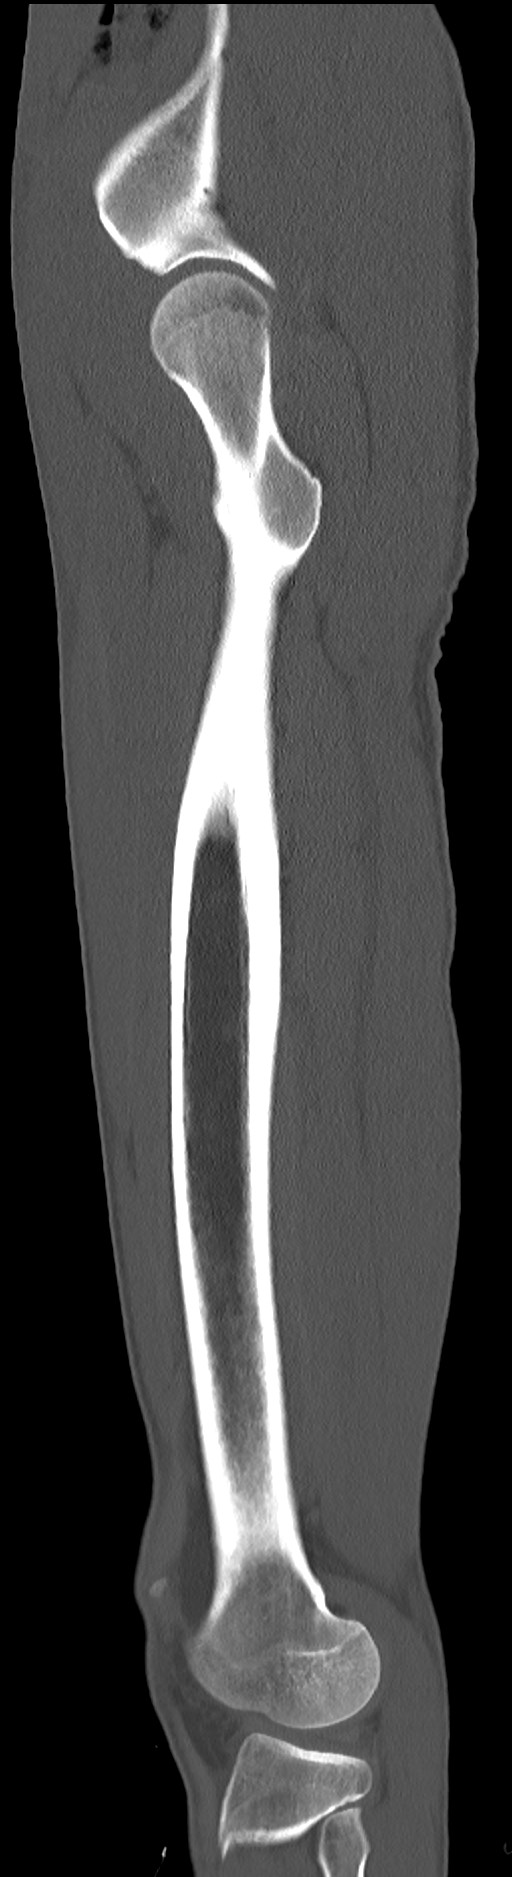 Chronic osteomyelitis (with sequestrum) (Radiopaedia 74813-85822 C 26).jpg